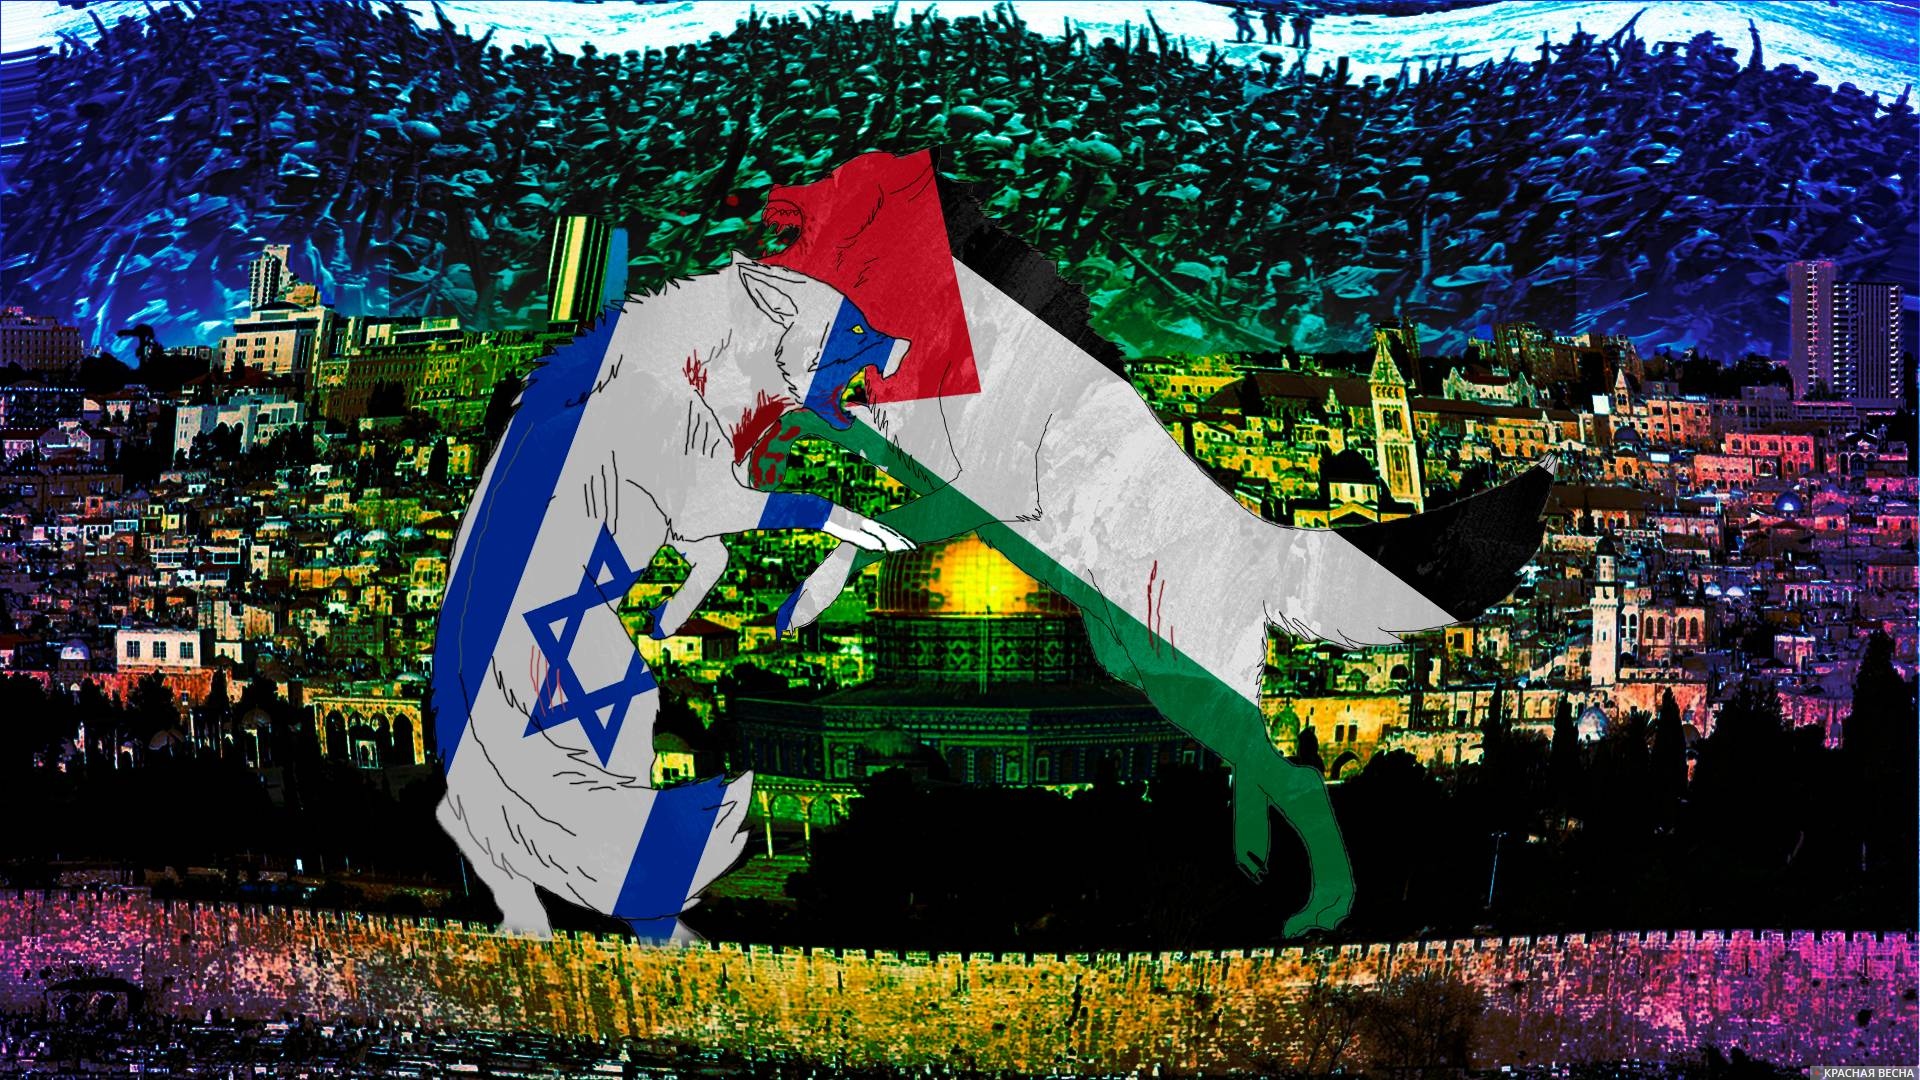 Палестино-израильский конфликт